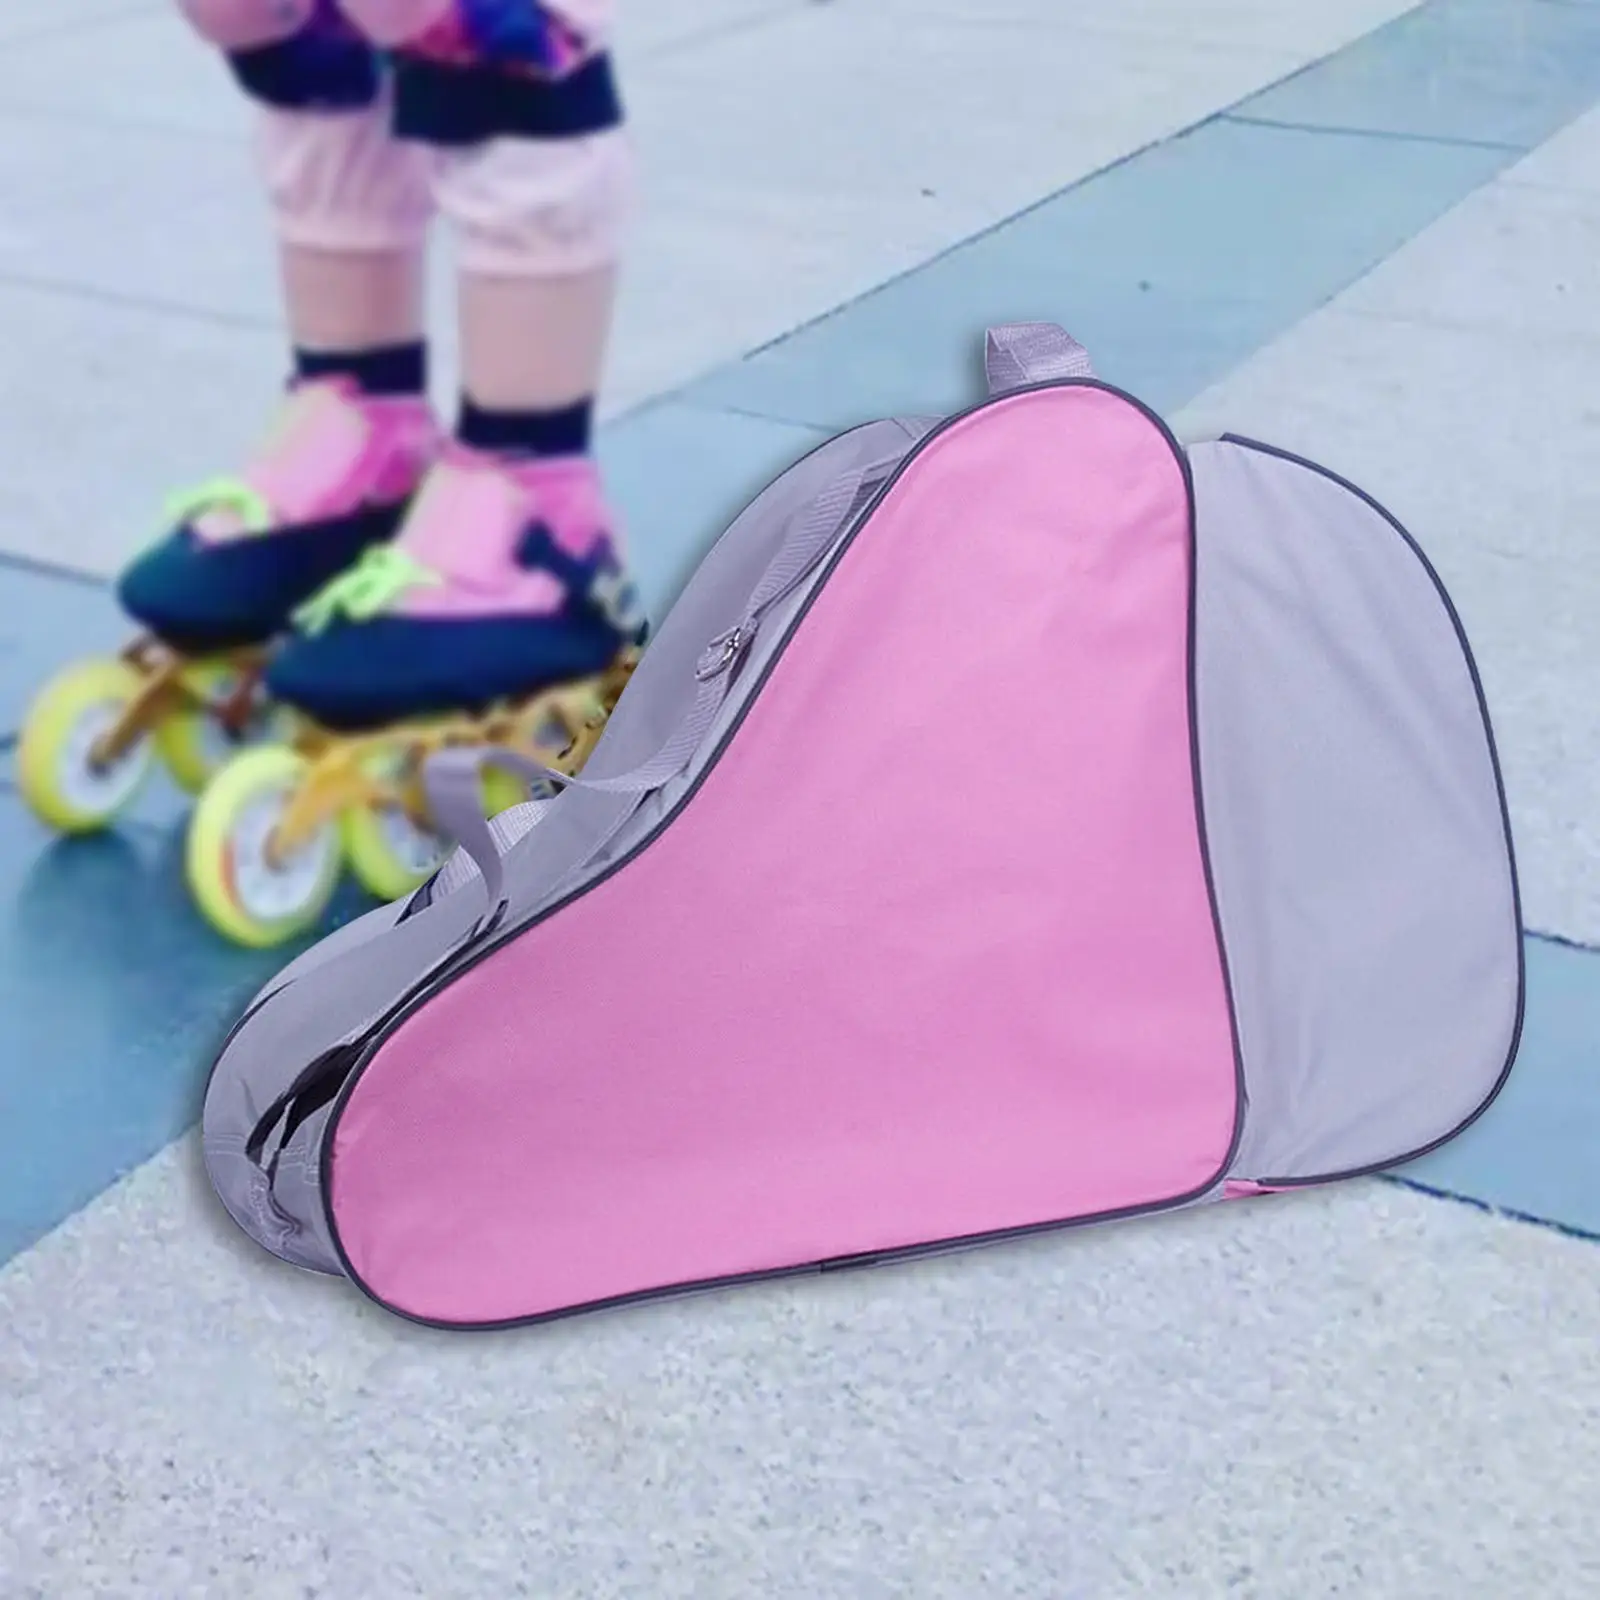 Roller Skate Bag Durable Roller Skate Carrier Handbag Ice Skate Bag for Ice Hockey Skate Figure Skates Quad Skates Inline Skates